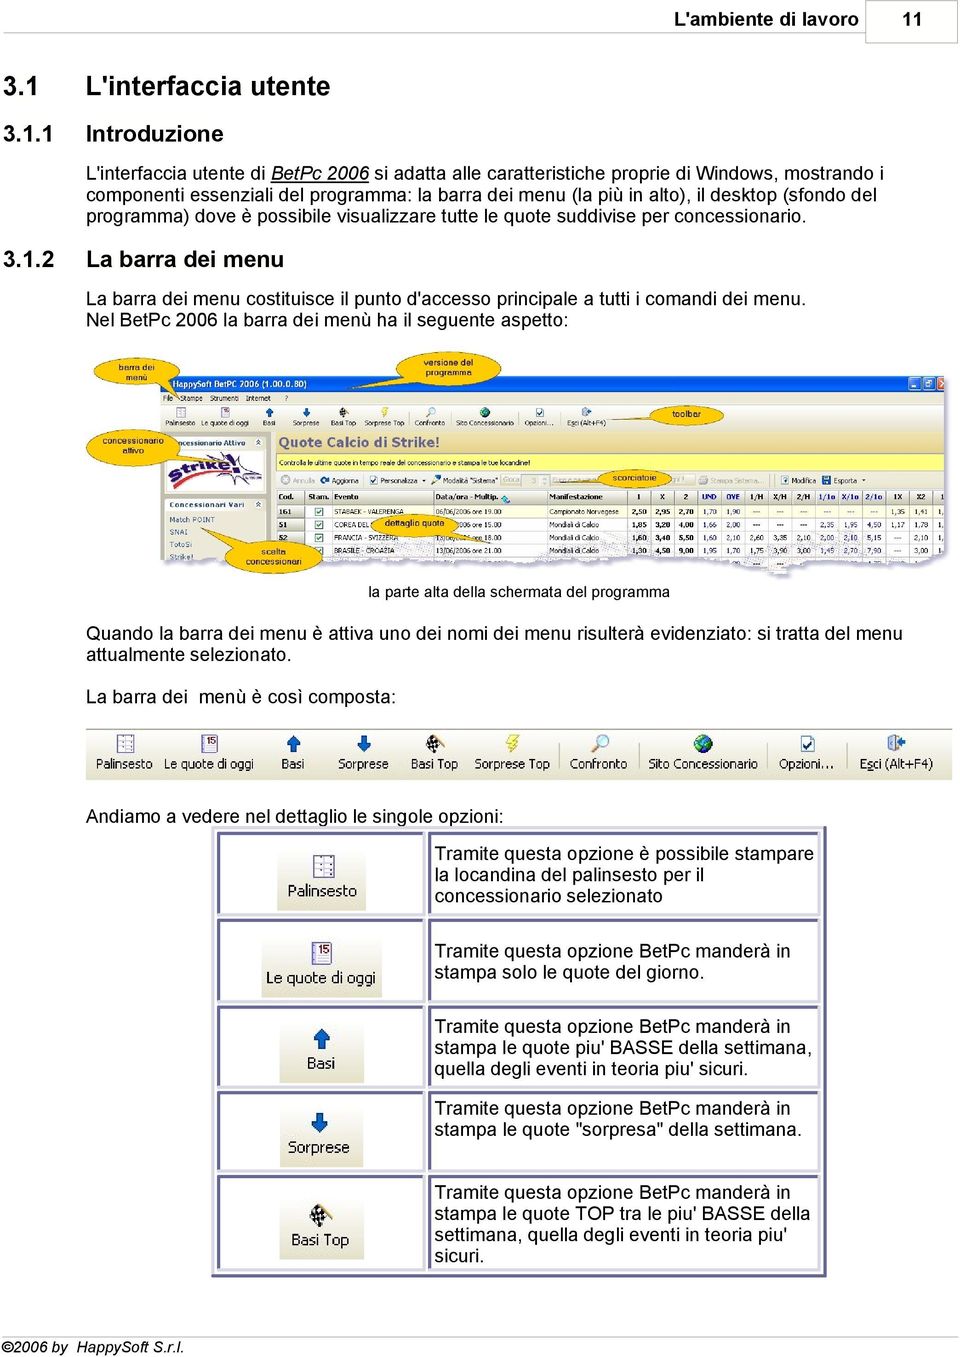 1 Introduzione 11 L'interfaccia utente di BetPc 2006 si adatta alle caratteristiche proprie di Windows, mostrando i componenti essenziali del programma: la barra dei menu (la più in alto), il desktop